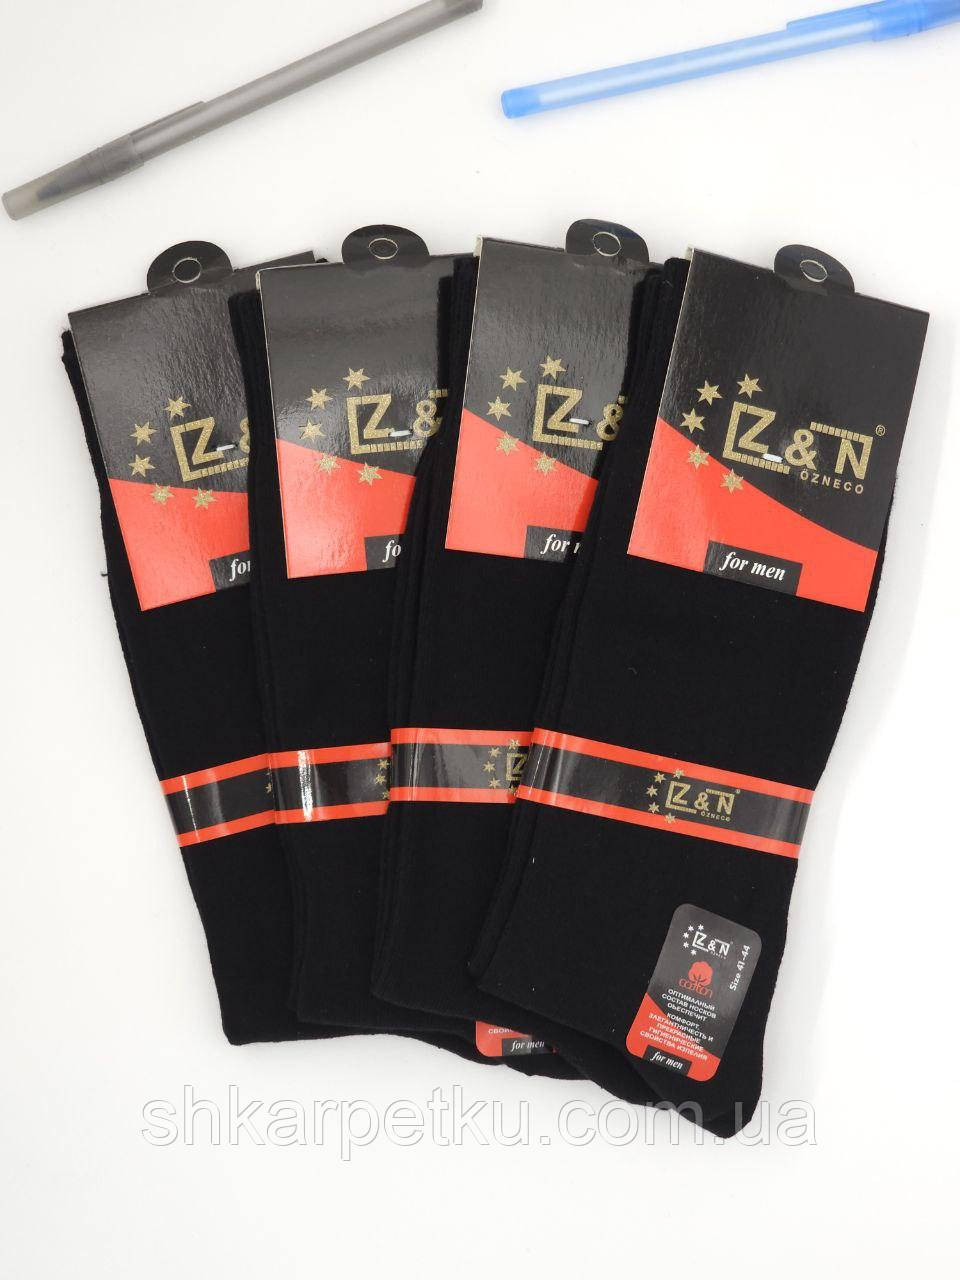 Чоловічі високі демдемісезонні шкарпетки Z&N, бавовняні стрейчеві класичні однотонні стильні,  розмір 41-44, 12 пар\уп. чорні